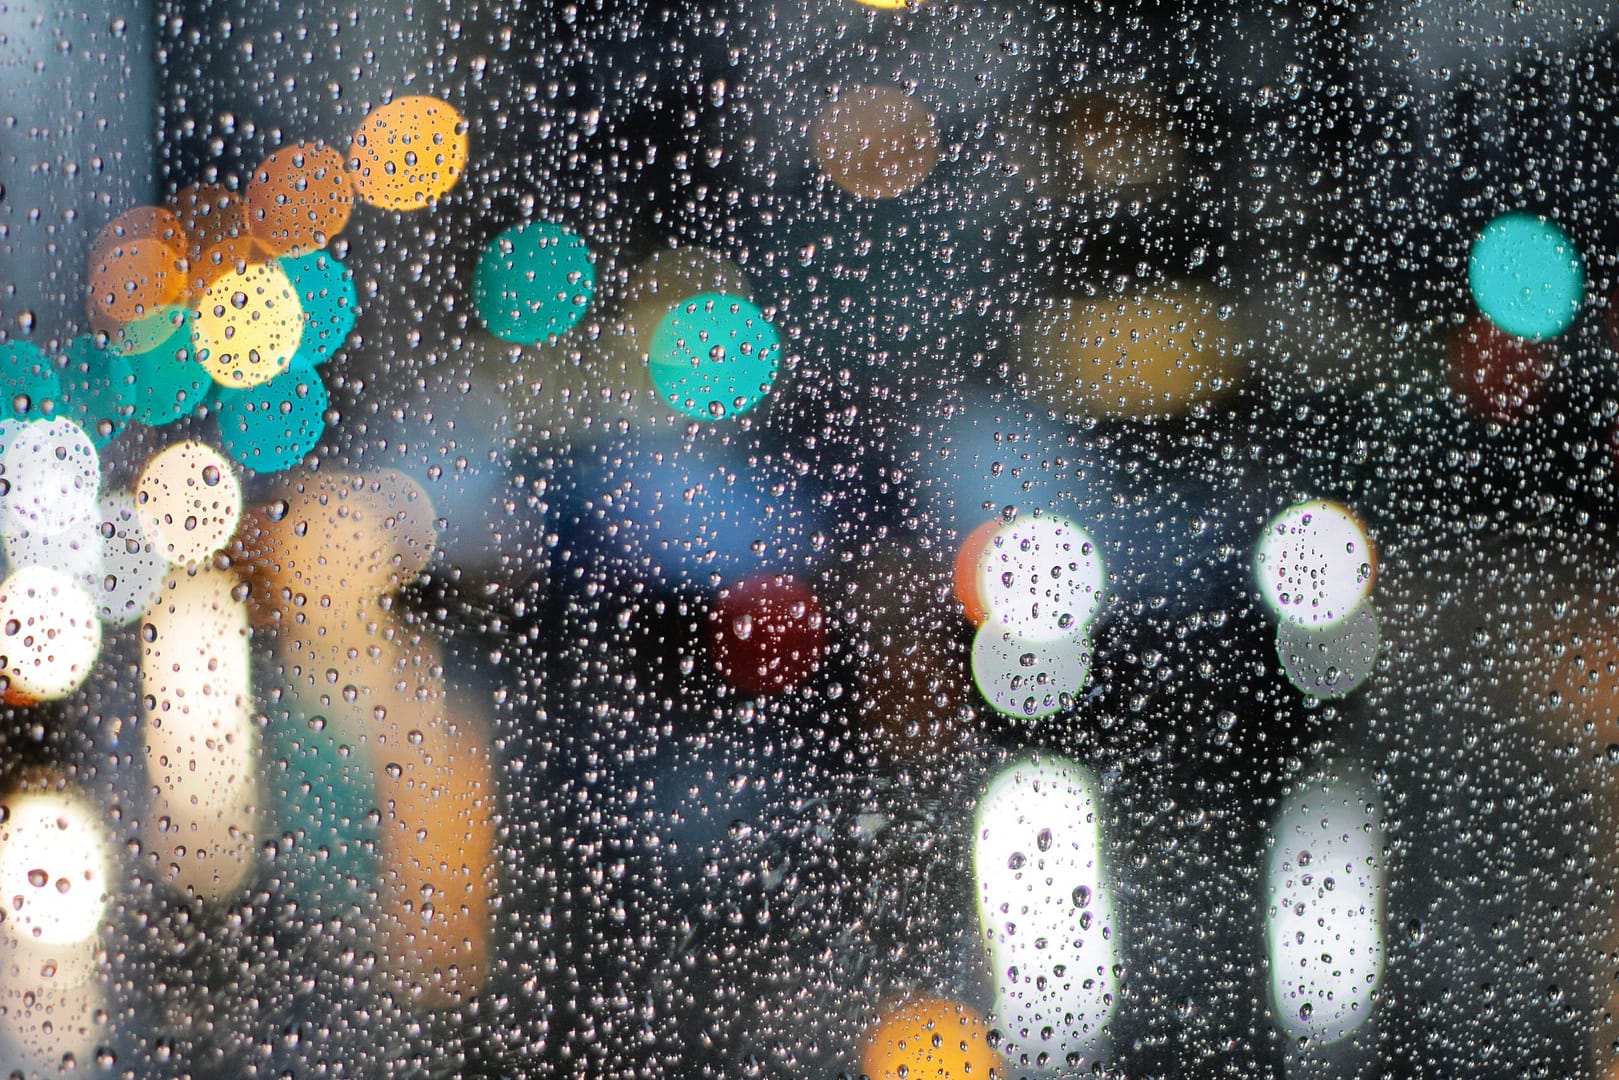 Rainy Day Photography Tips